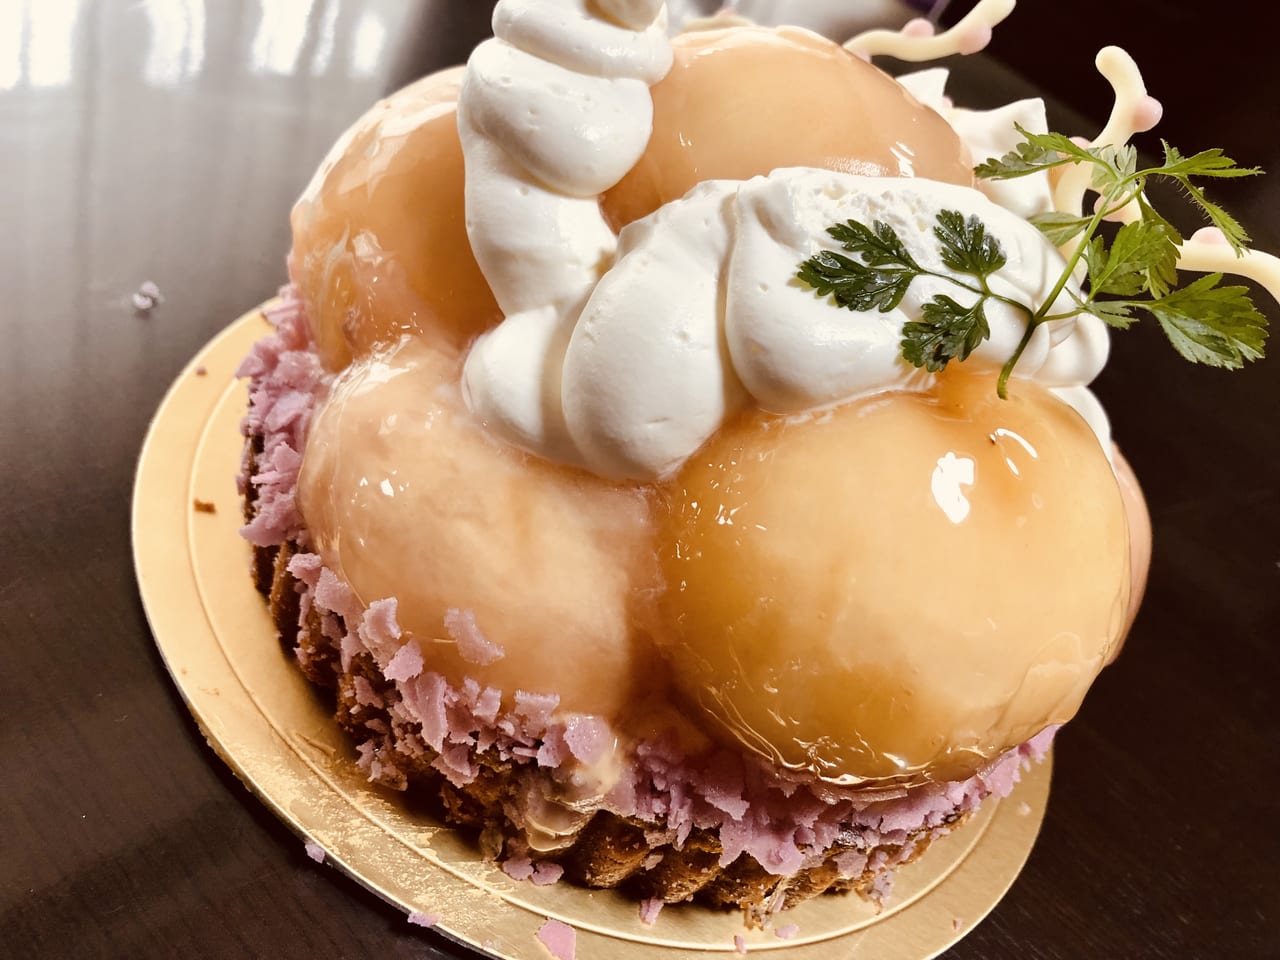 関市 Sweets Homare スイーツ ほまれ の特大桃ケーキは見た目 味ともに大満足です 号外net 可児市 岐阜県中濃地域